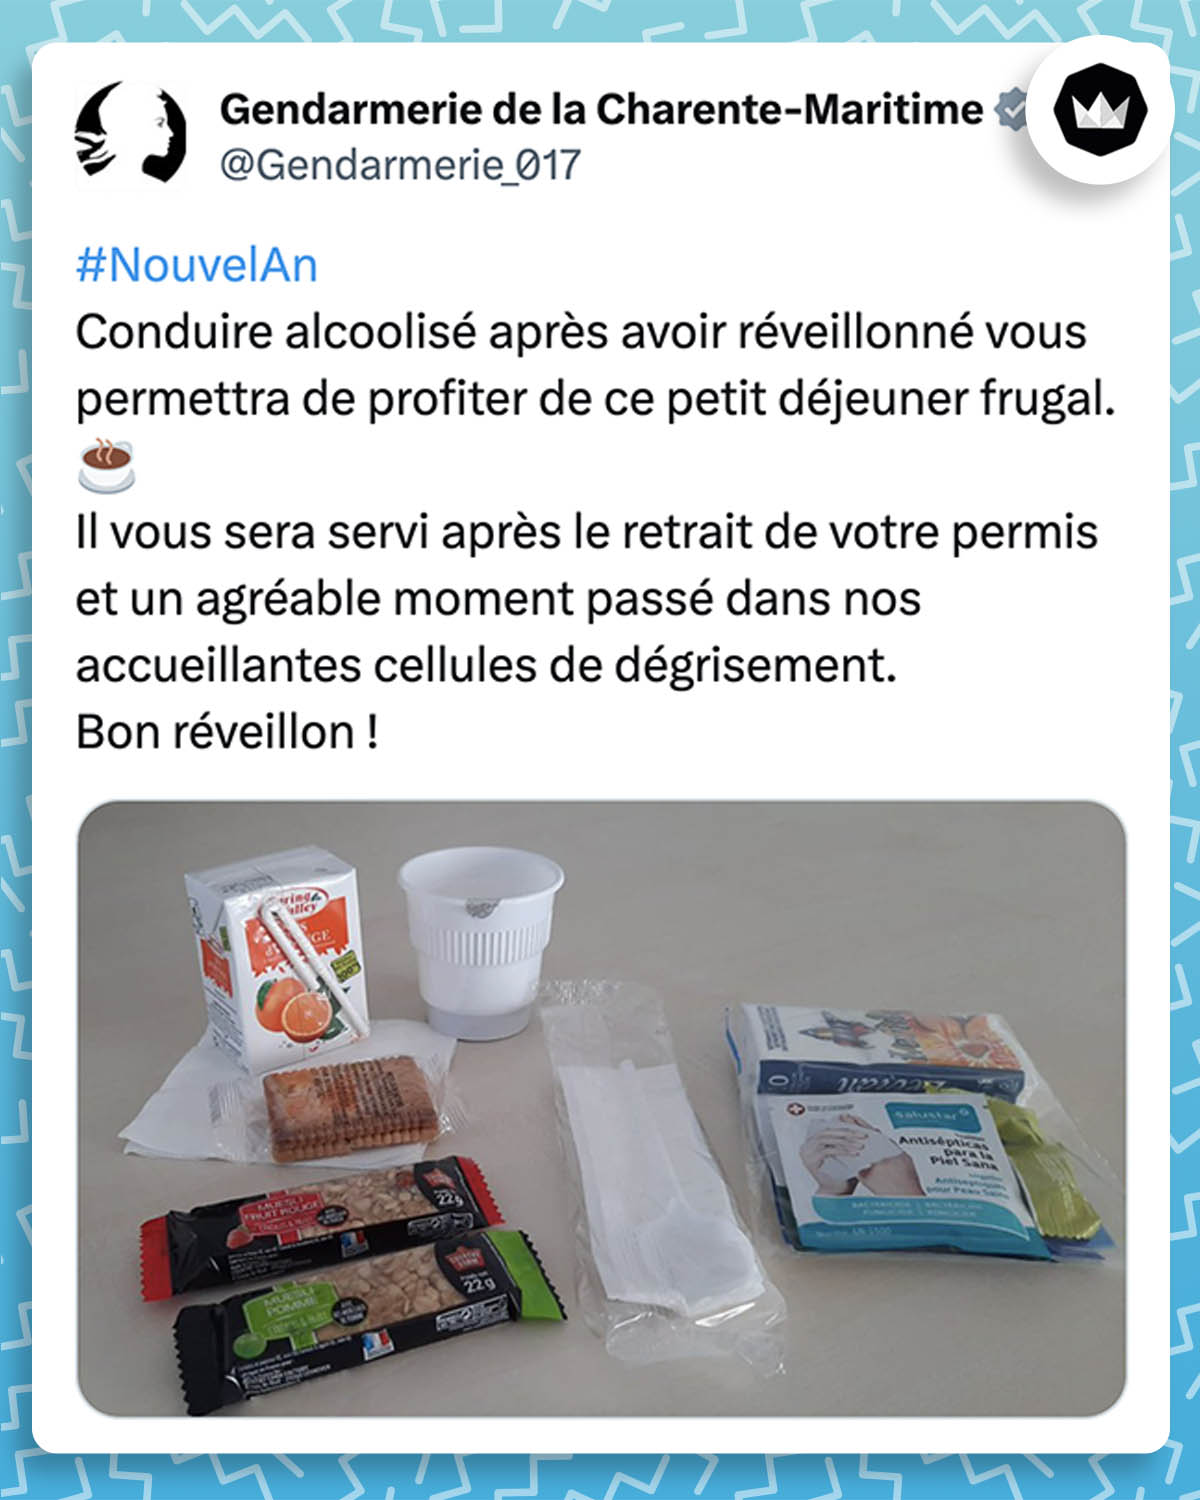 tweet de Gendarmerie_017 :
#NouvelAn 
Conduire alcoolisé après avoir réveillonné vous permettra de profiter de ce petit déjeuner frugal.☕️
Il vous sera servi après le retrait de votre permis et un agréable moment passé dans nos accueillantes cellules de dégrisement.

Bon réveillon !
#2022NewYear
Gendarmerie de la Charente-Maritime